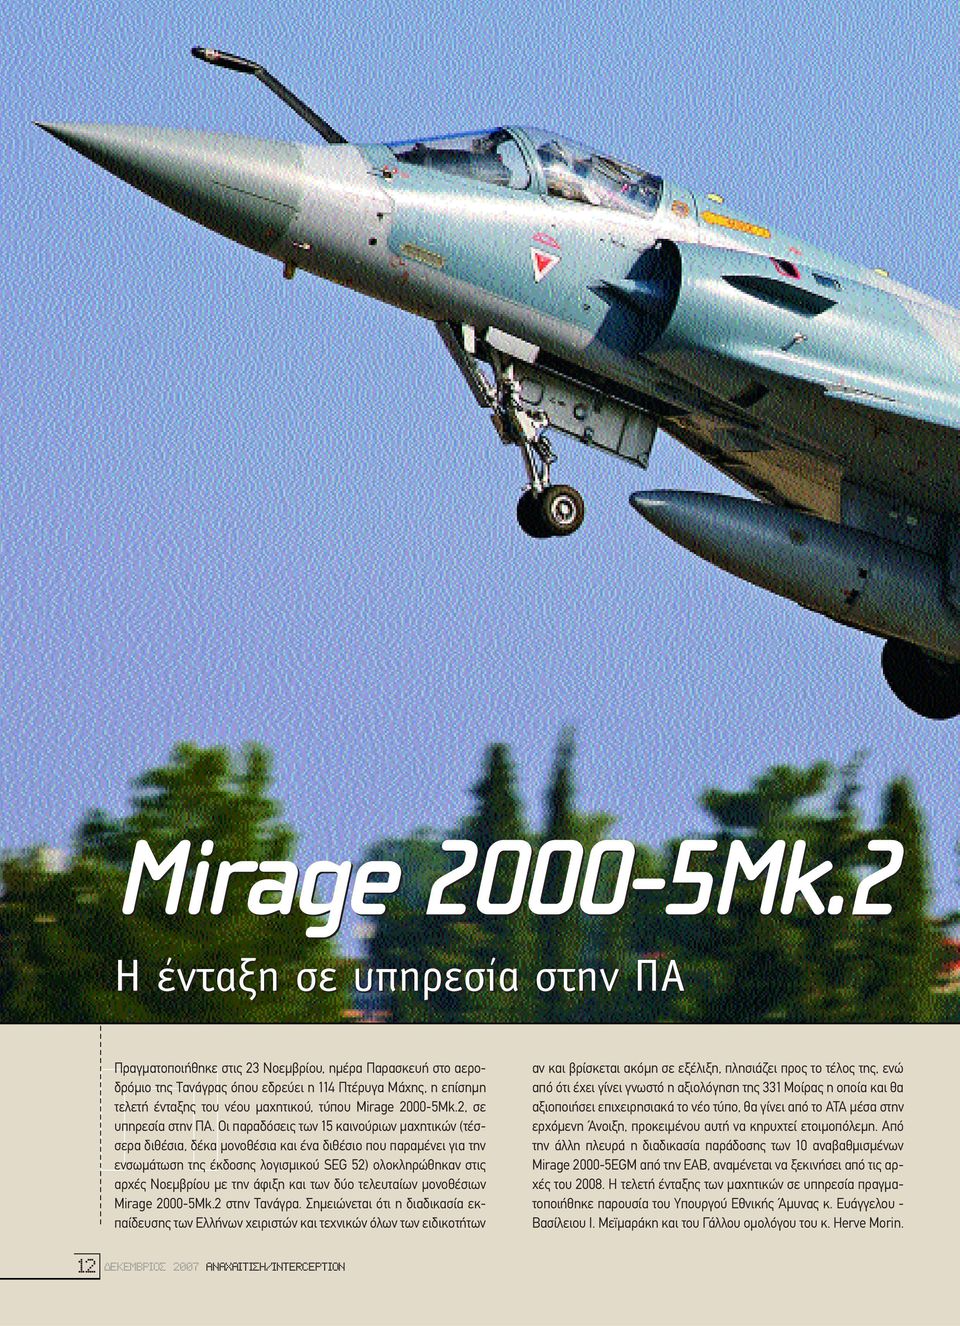 ένταξης του νέου µαχητικού, τύπου Mirage 2000-5Mk.2, σε υπηρεσία στην ΠΑ.